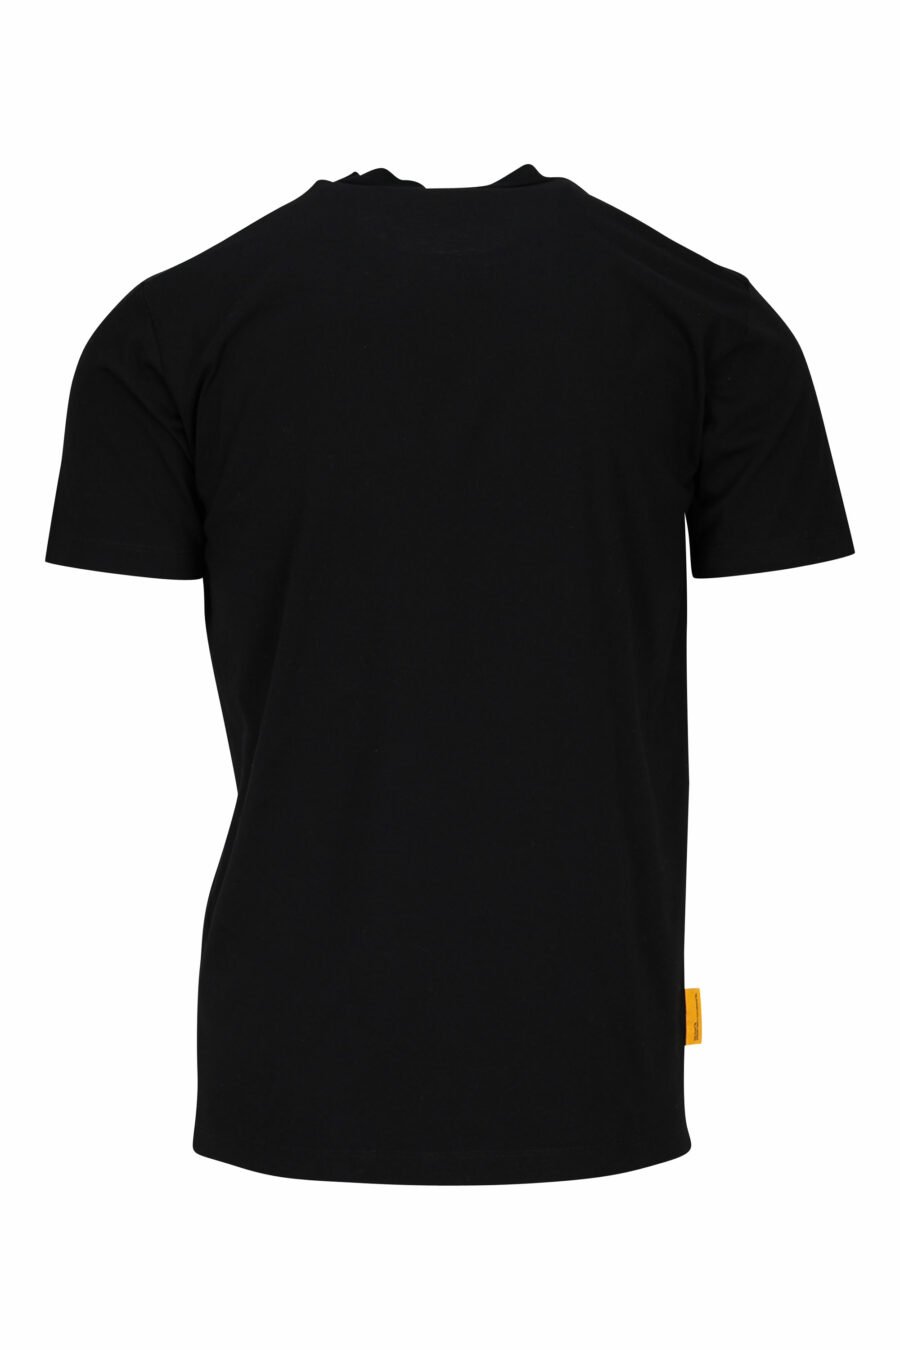 Schwarzes T-Shirt mit "pac-man" Geist maxilogo - 8054148203801 1